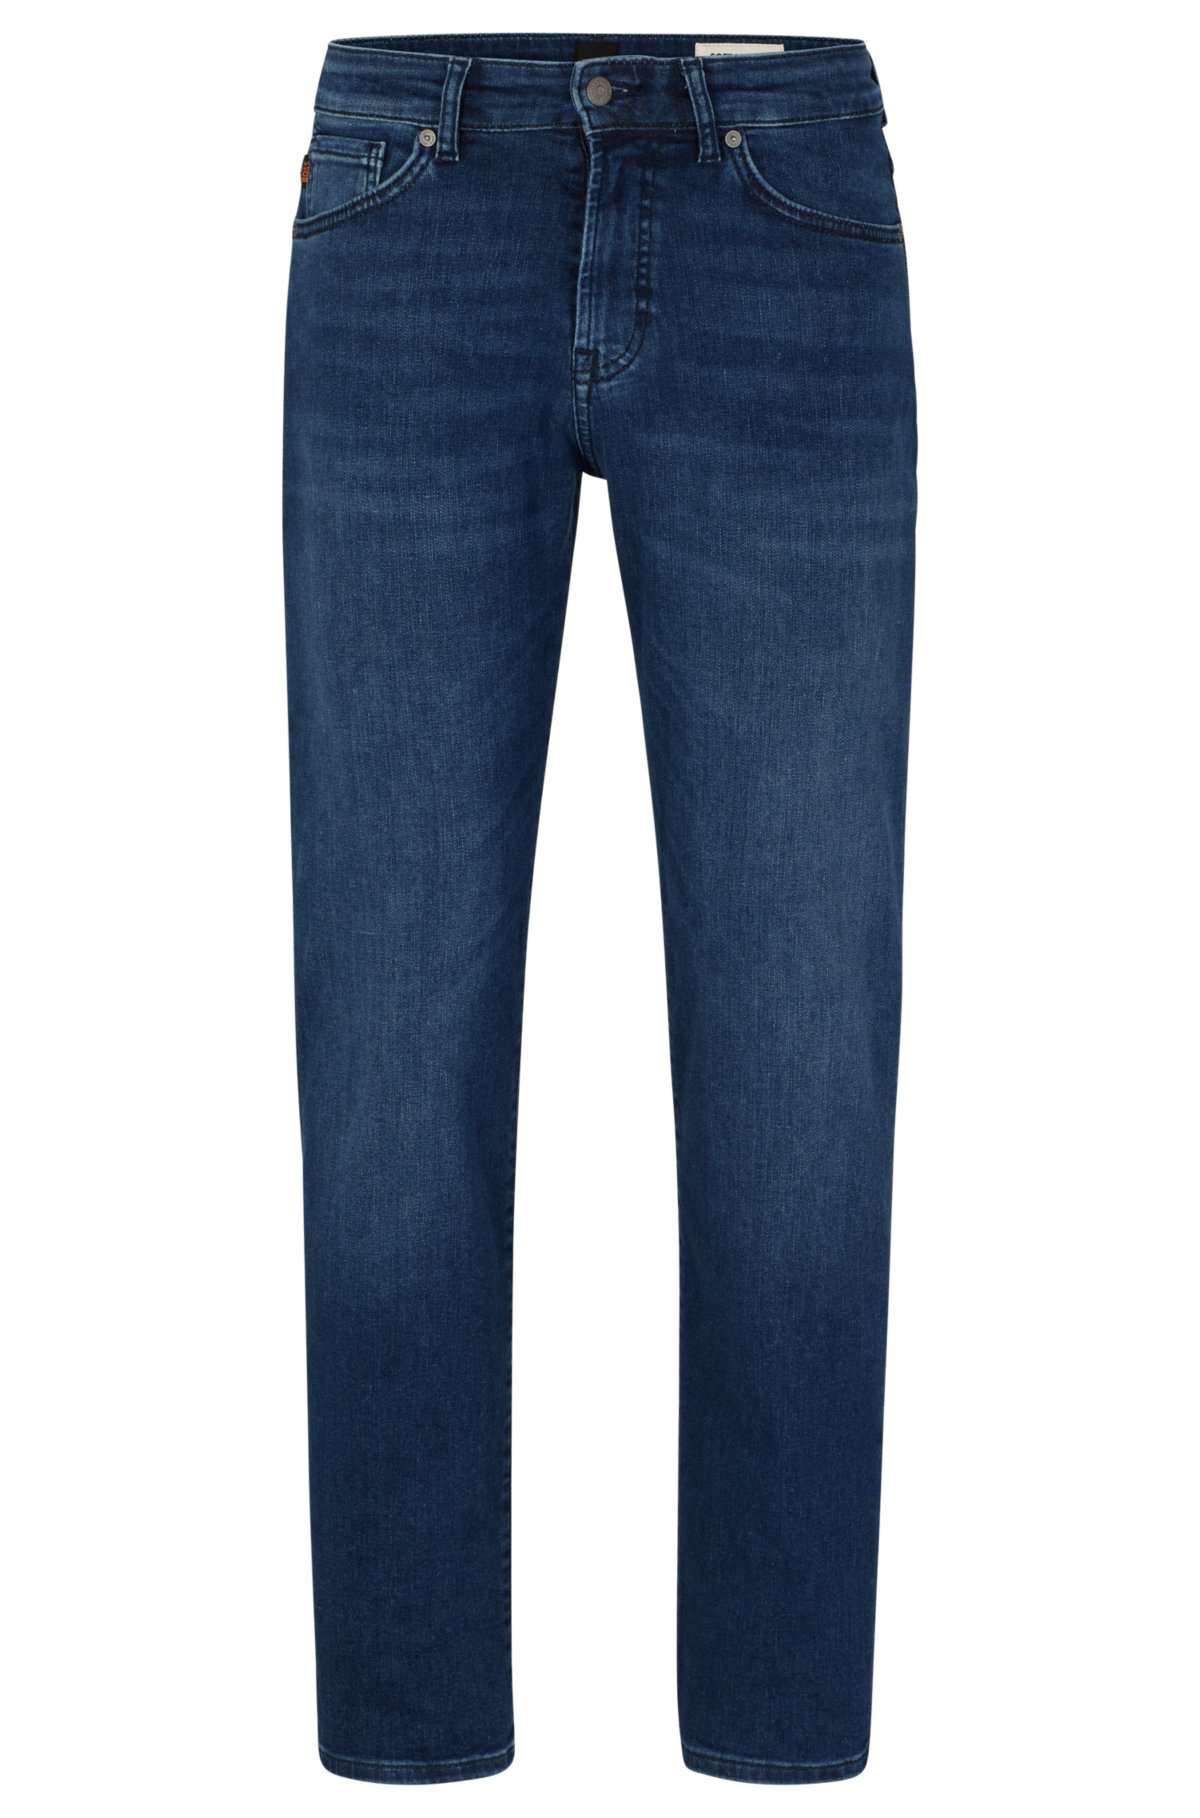 BOSS - Regular-fit jeans in mid-blue super-stretch denim